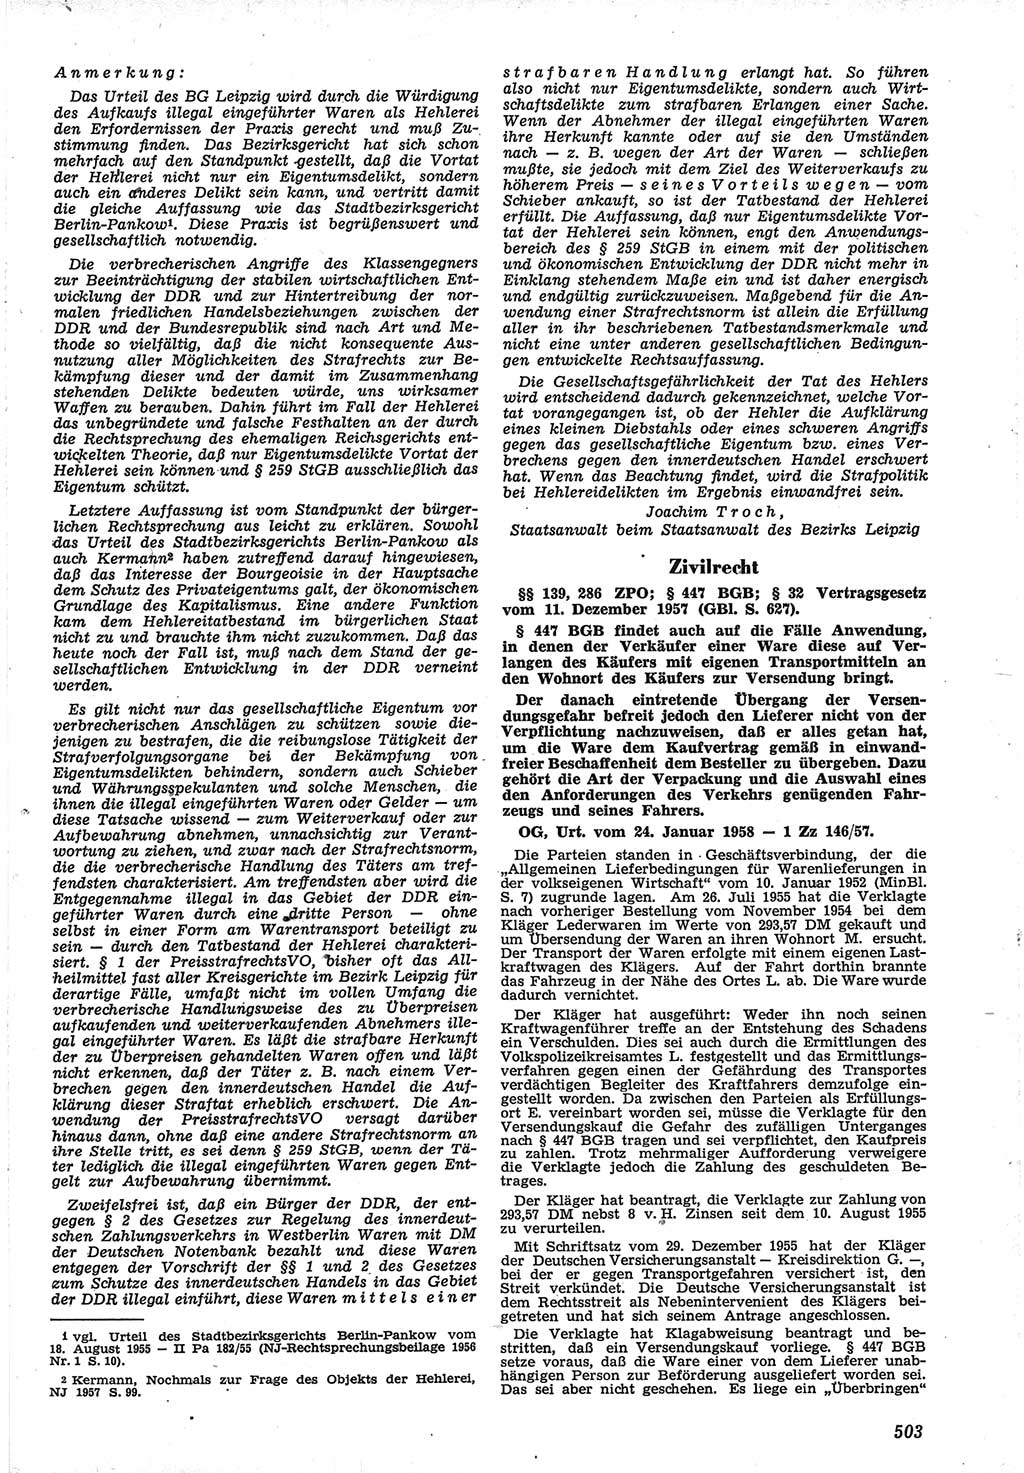 Neue Justiz (NJ), Zeitschrift für Recht und Rechtswissenschaft [Deutsche Demokratische Republik (DDR)], 12. Jahrgang 1958, Seite 503 (NJ DDR 1958, S. 503)